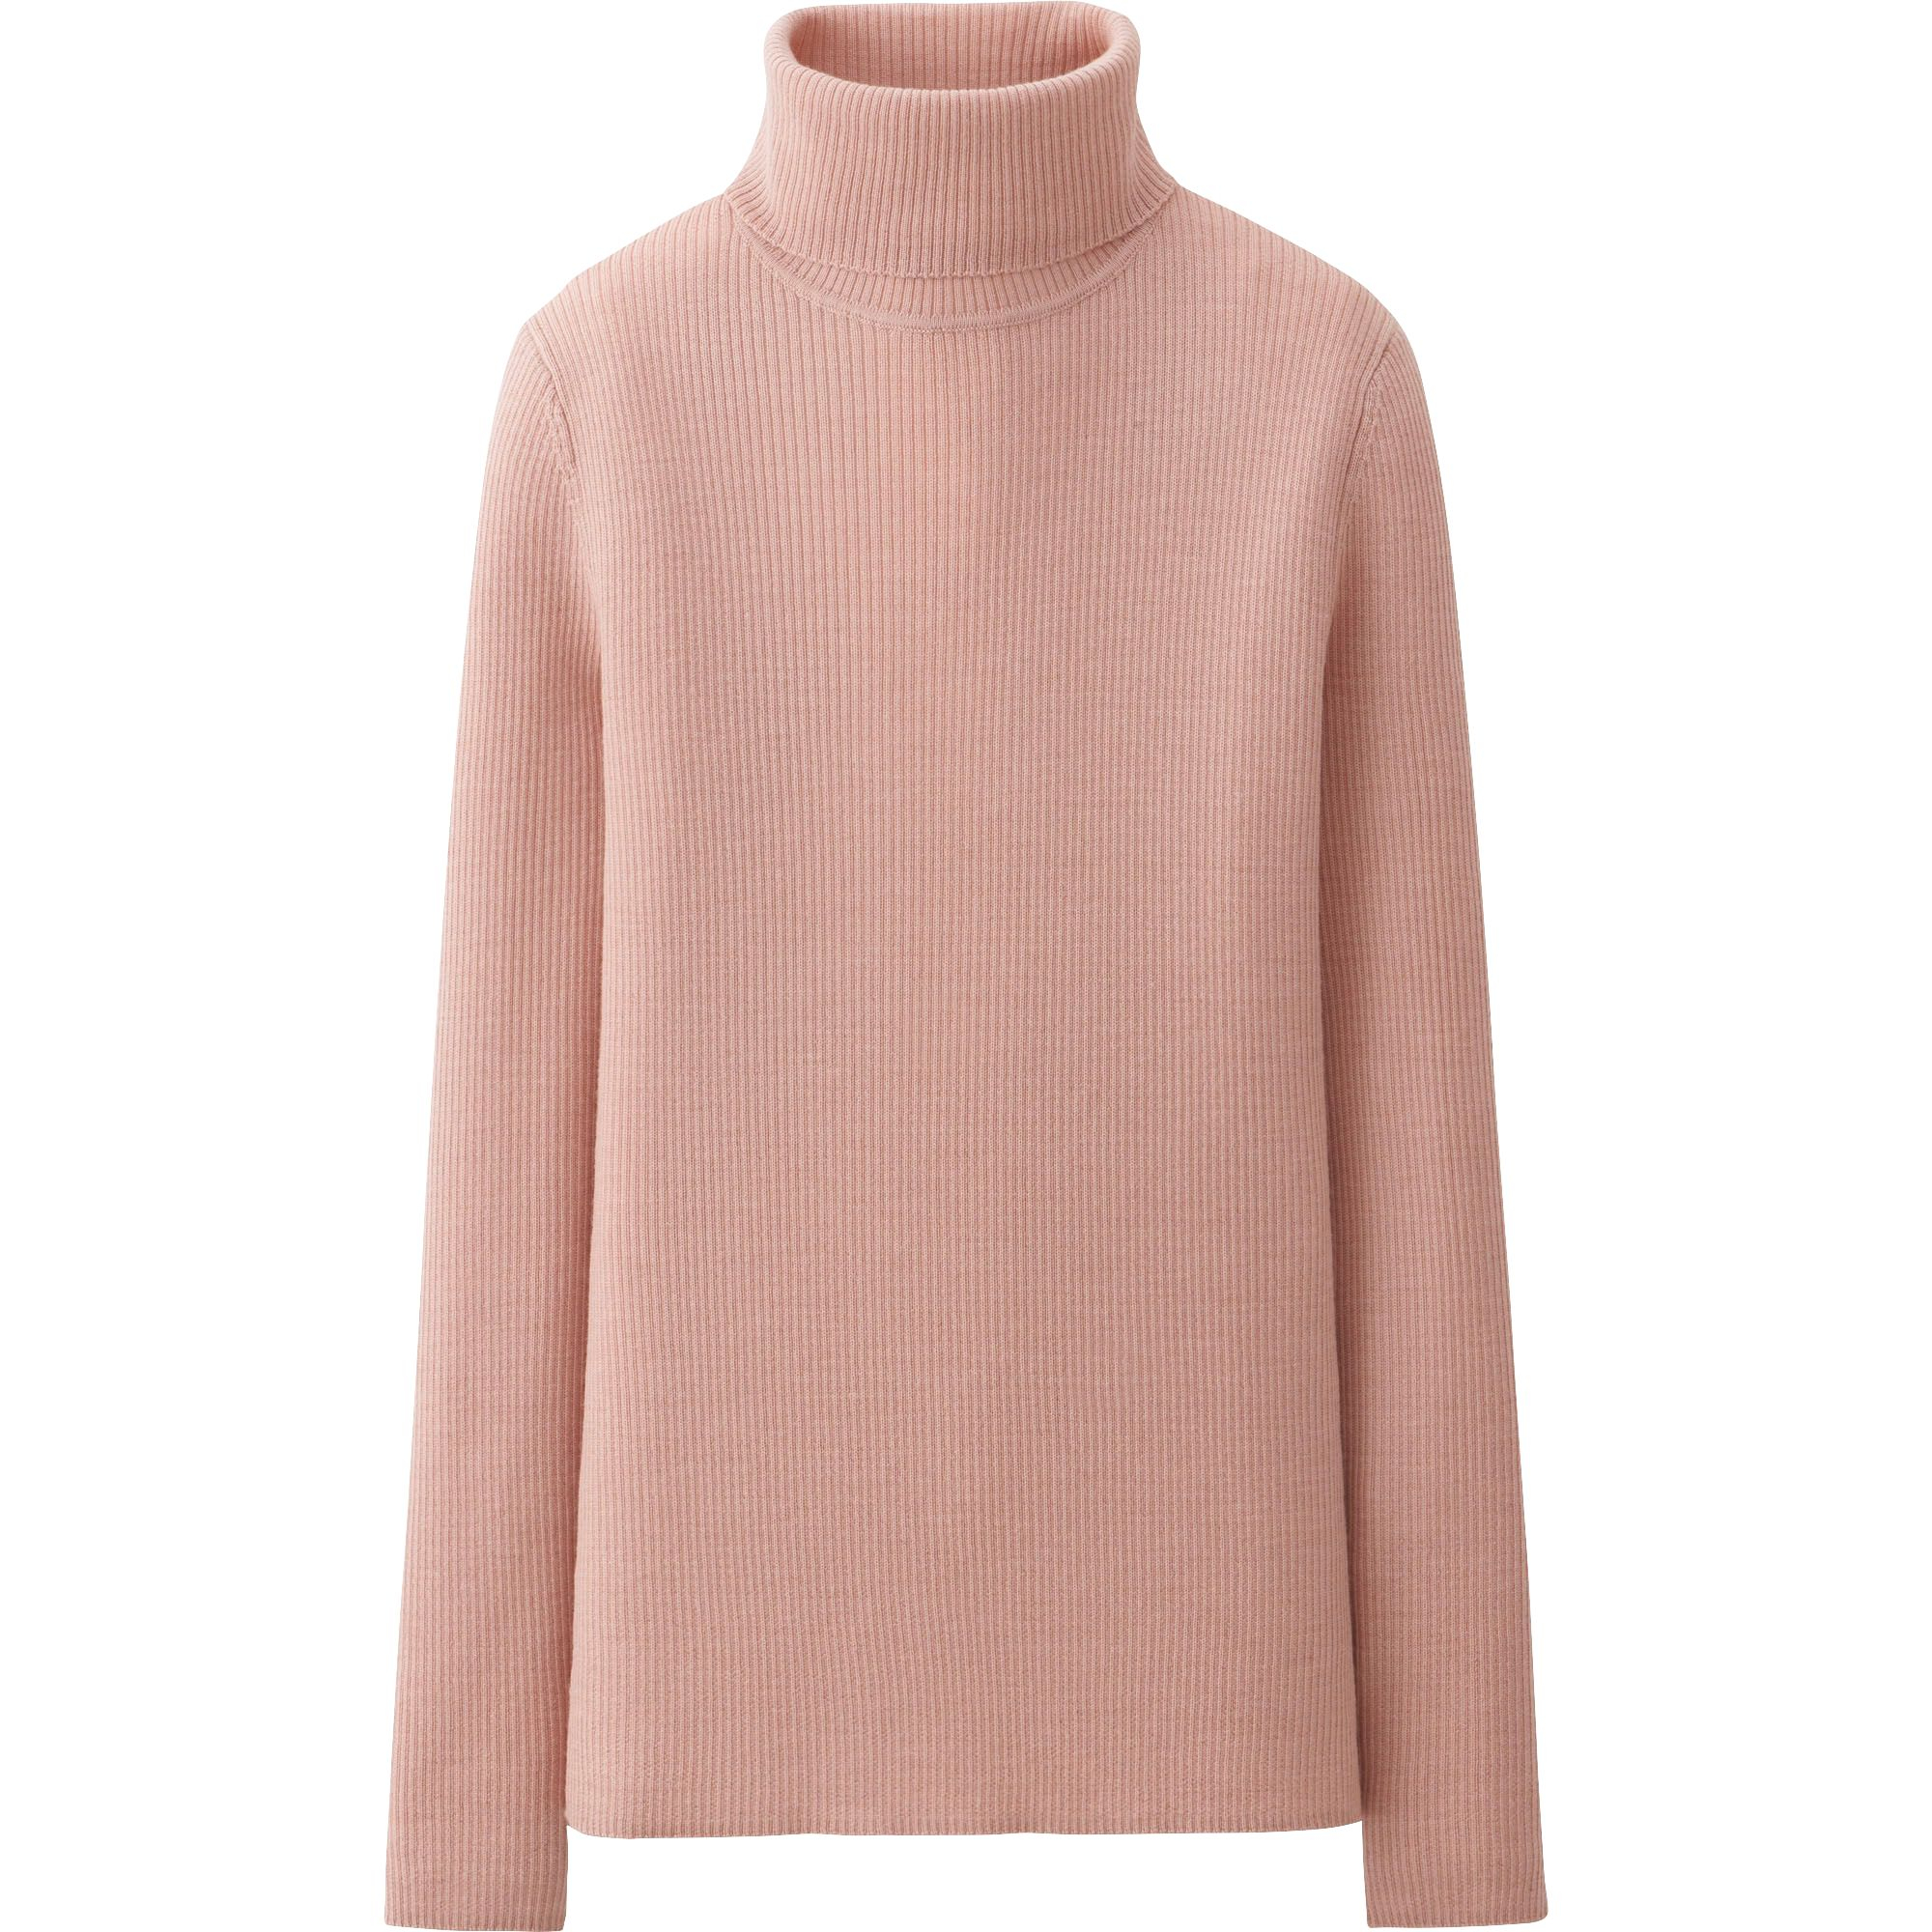 Uniqlo Extra Fine Merino Rib Polo Neck Sweater in Pink for ...